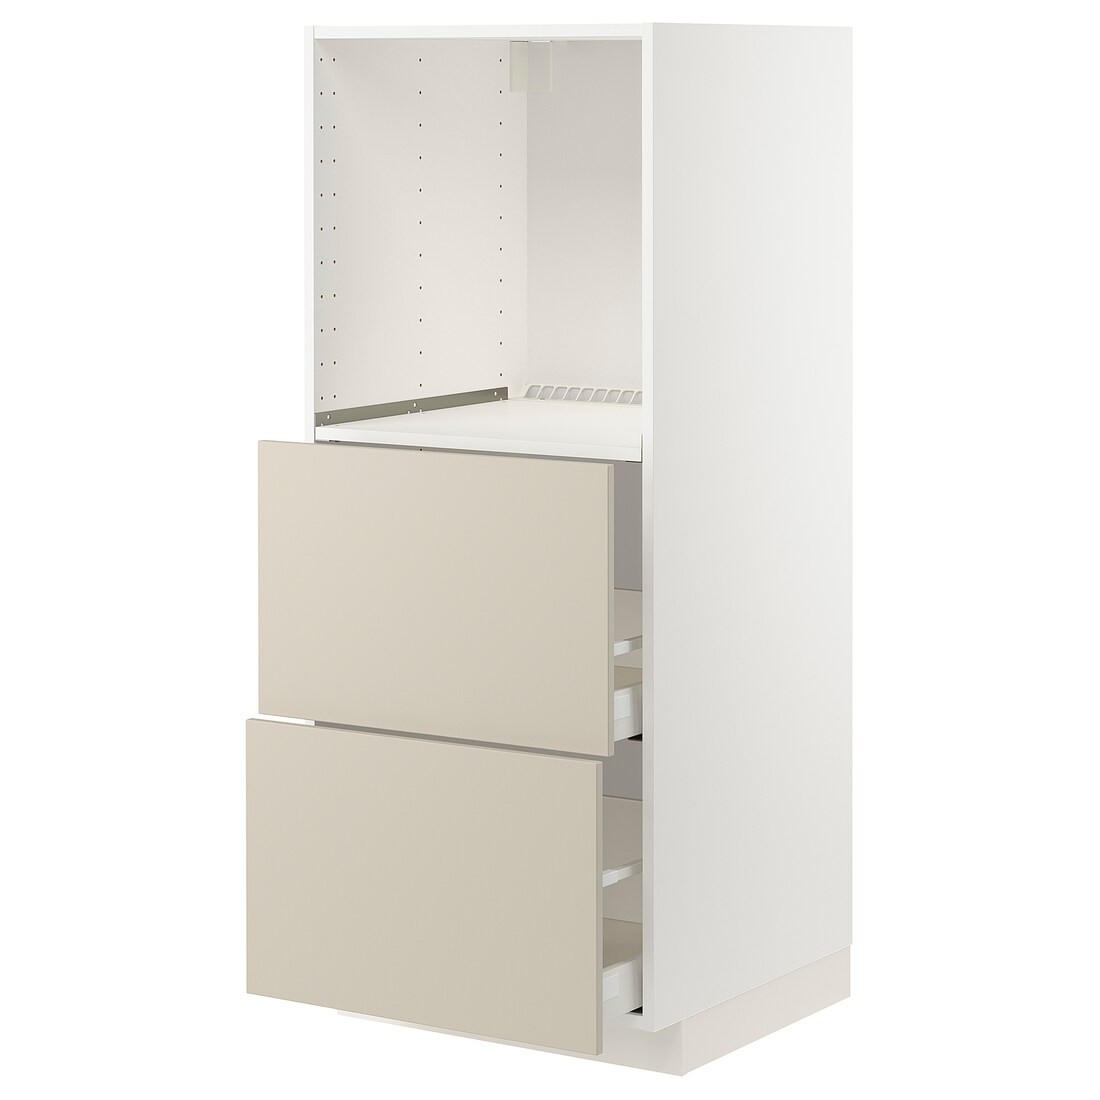 METOD МЕТОД / MAXIMERA МАКСИМЕРА Высокий шкаф с 2 ящиками для духовки, белый / Havstorp бежевый, 60x60x140 см